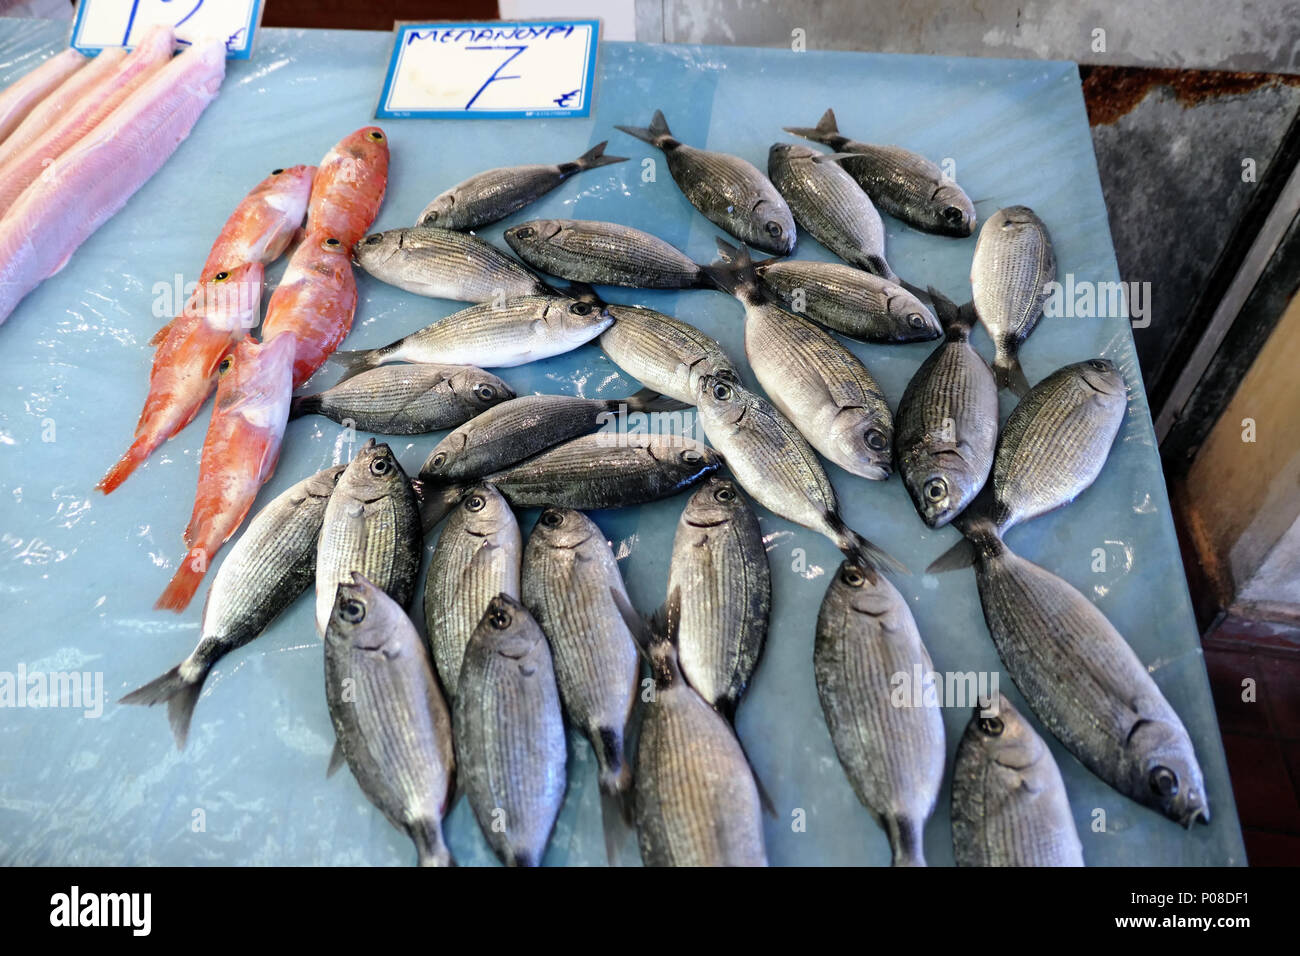 Tradizionale mercato del pesce a Corfù città (Corfu) in Grecia. diverse specie di pesci mediterranei in vendita. Foto Stock